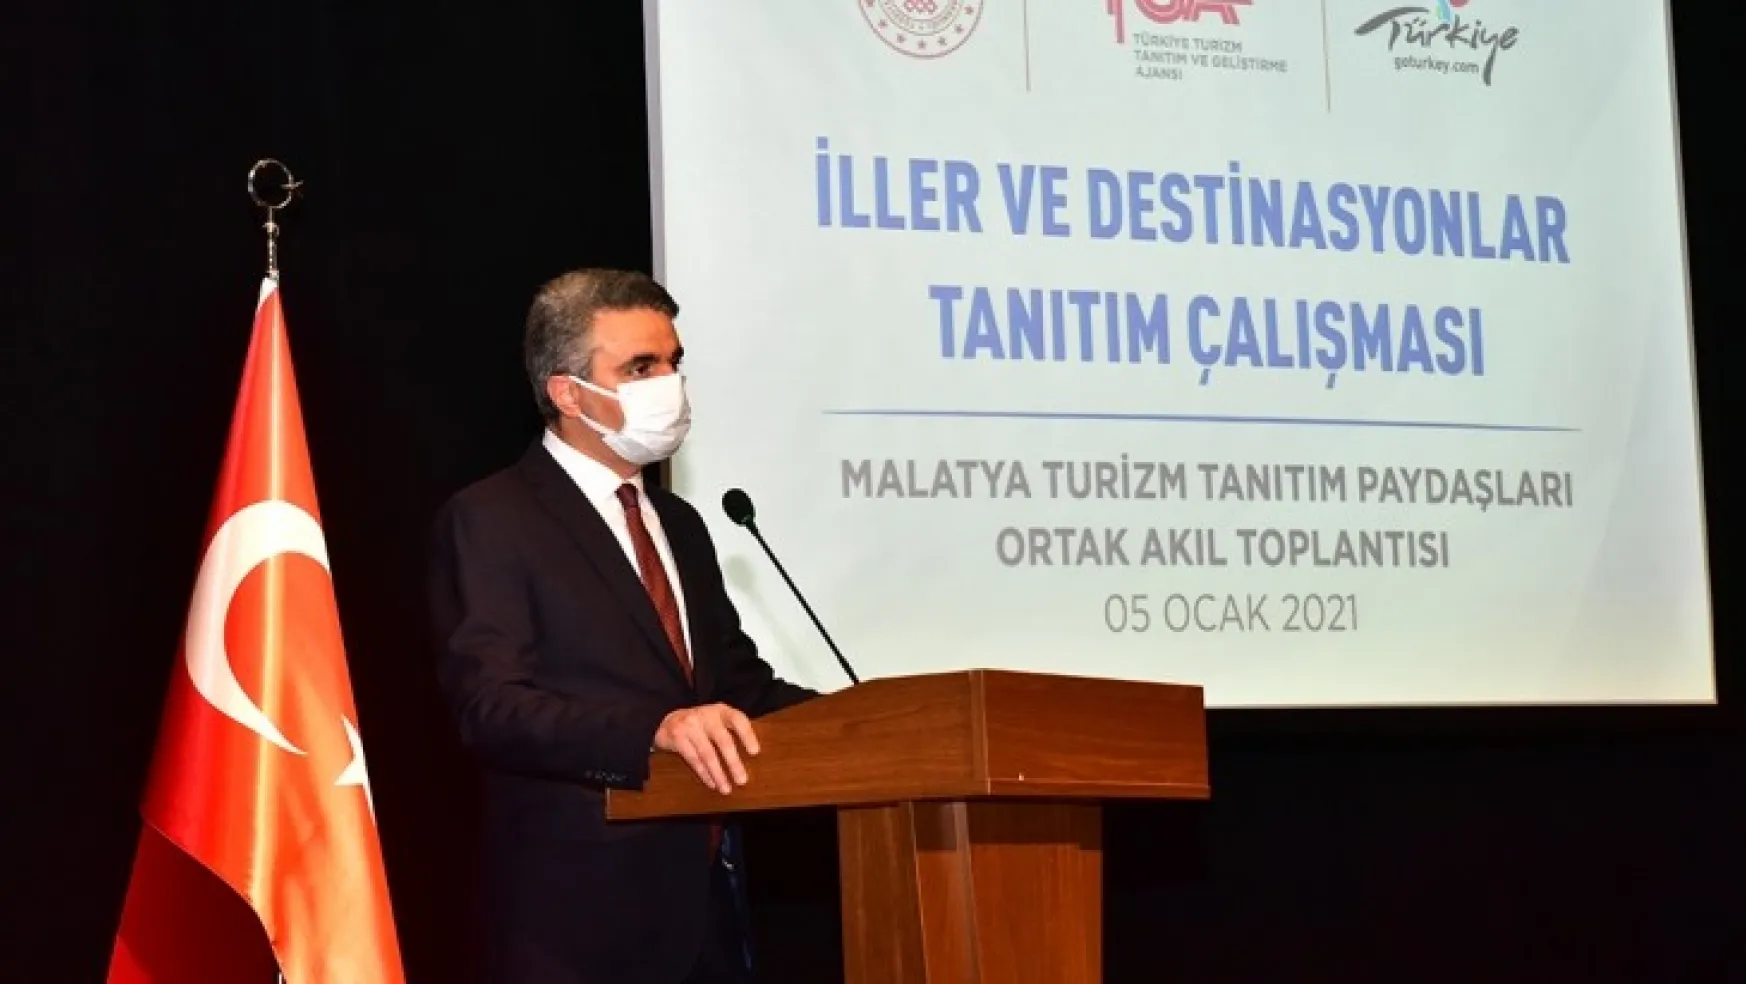 'Turizm Tanıtım Paydaşları Ortak Akıl Toplantısı' Malatya'da Düzenlendi